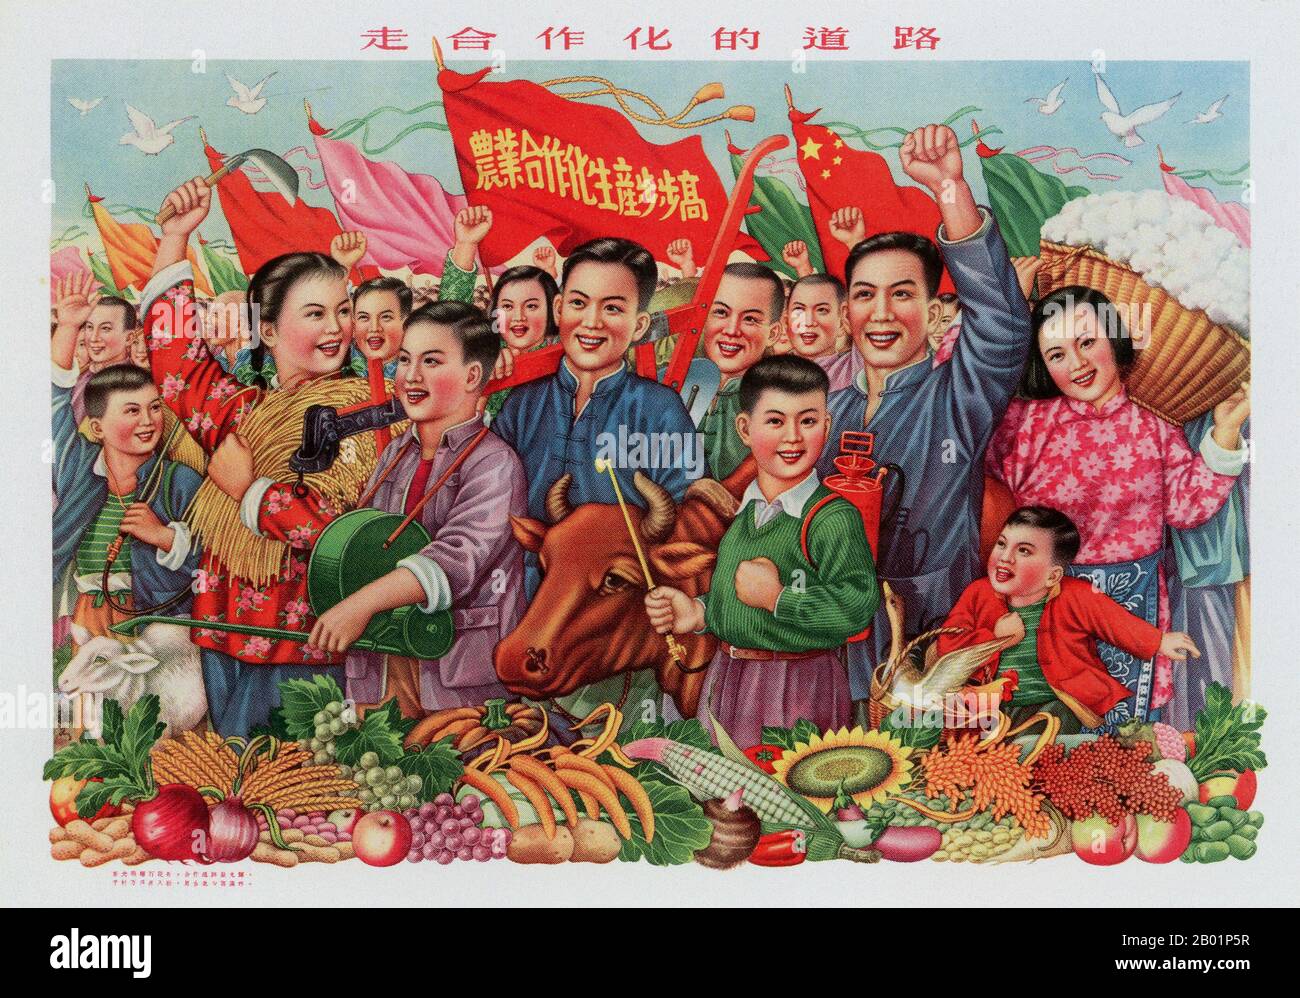 Chine : « réaliser une grande récolte chaque année, prendre la route de la coopération ». Affiche de propagande de l'époque du Grand bond en avant (1958-1961), 1964. Le Grand bond en avant de la République populaire de Chine (RPC) était une campagne économique et sociale du Parti communiste chinois (PCC), reflétée dans les décisions de planification de 1958 à 1961, qui visait à utiliser la vaste population chinoise pour transformer rapidement le pays d'une économie agraire en une société communiste moderne à travers le processus d'industrialisation rapide et de collectivisation. Banque D'Images